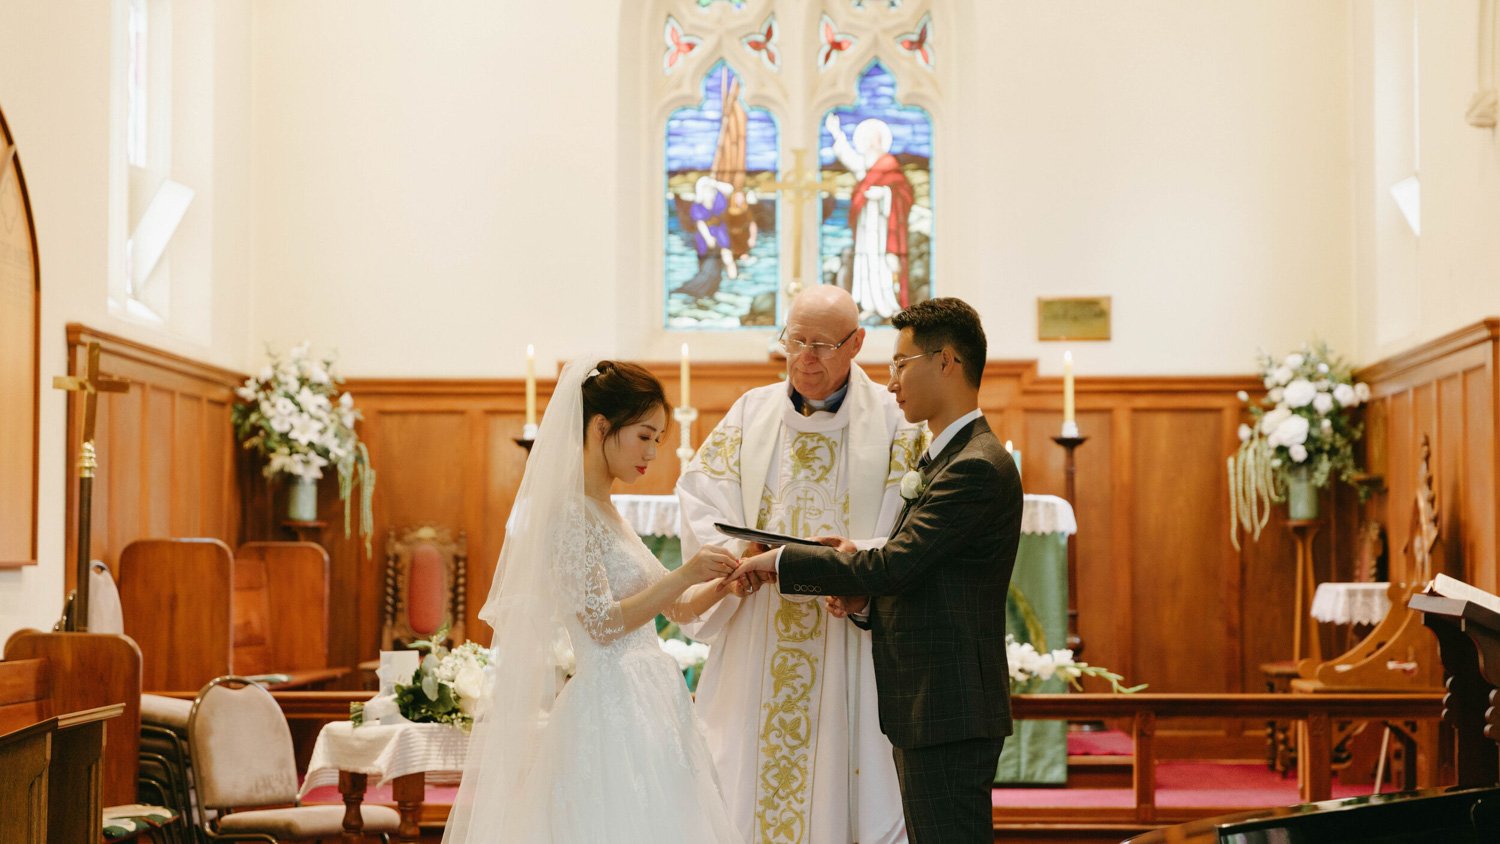 Queenstownn St Peter's Anglican Church wedding elopement photographer Panda Bay Films-19.jpg